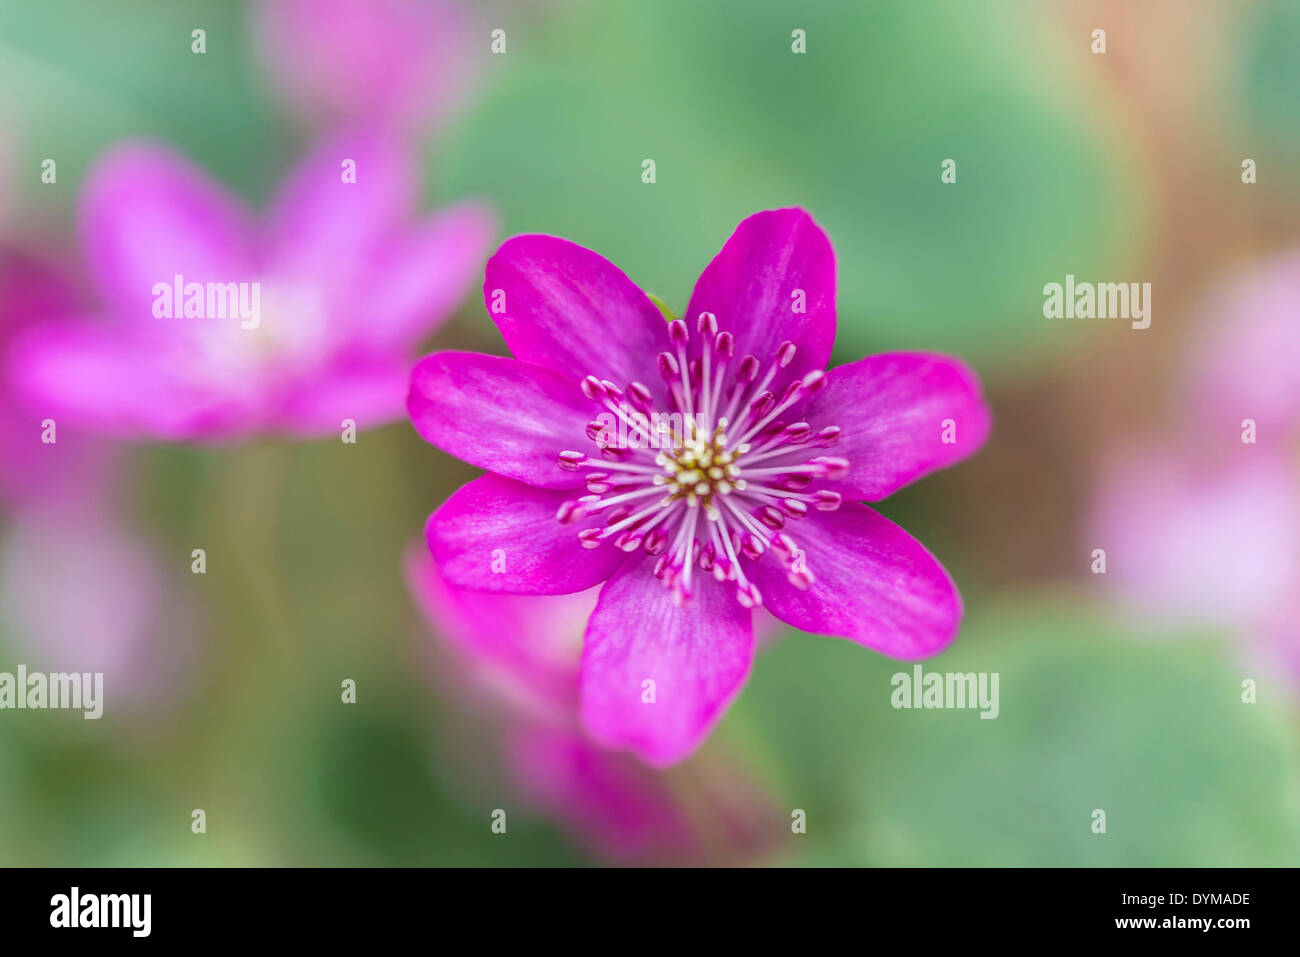 Pink Hepatica or Liverwort (Hepatica), cultivar, close-up Stock Photo